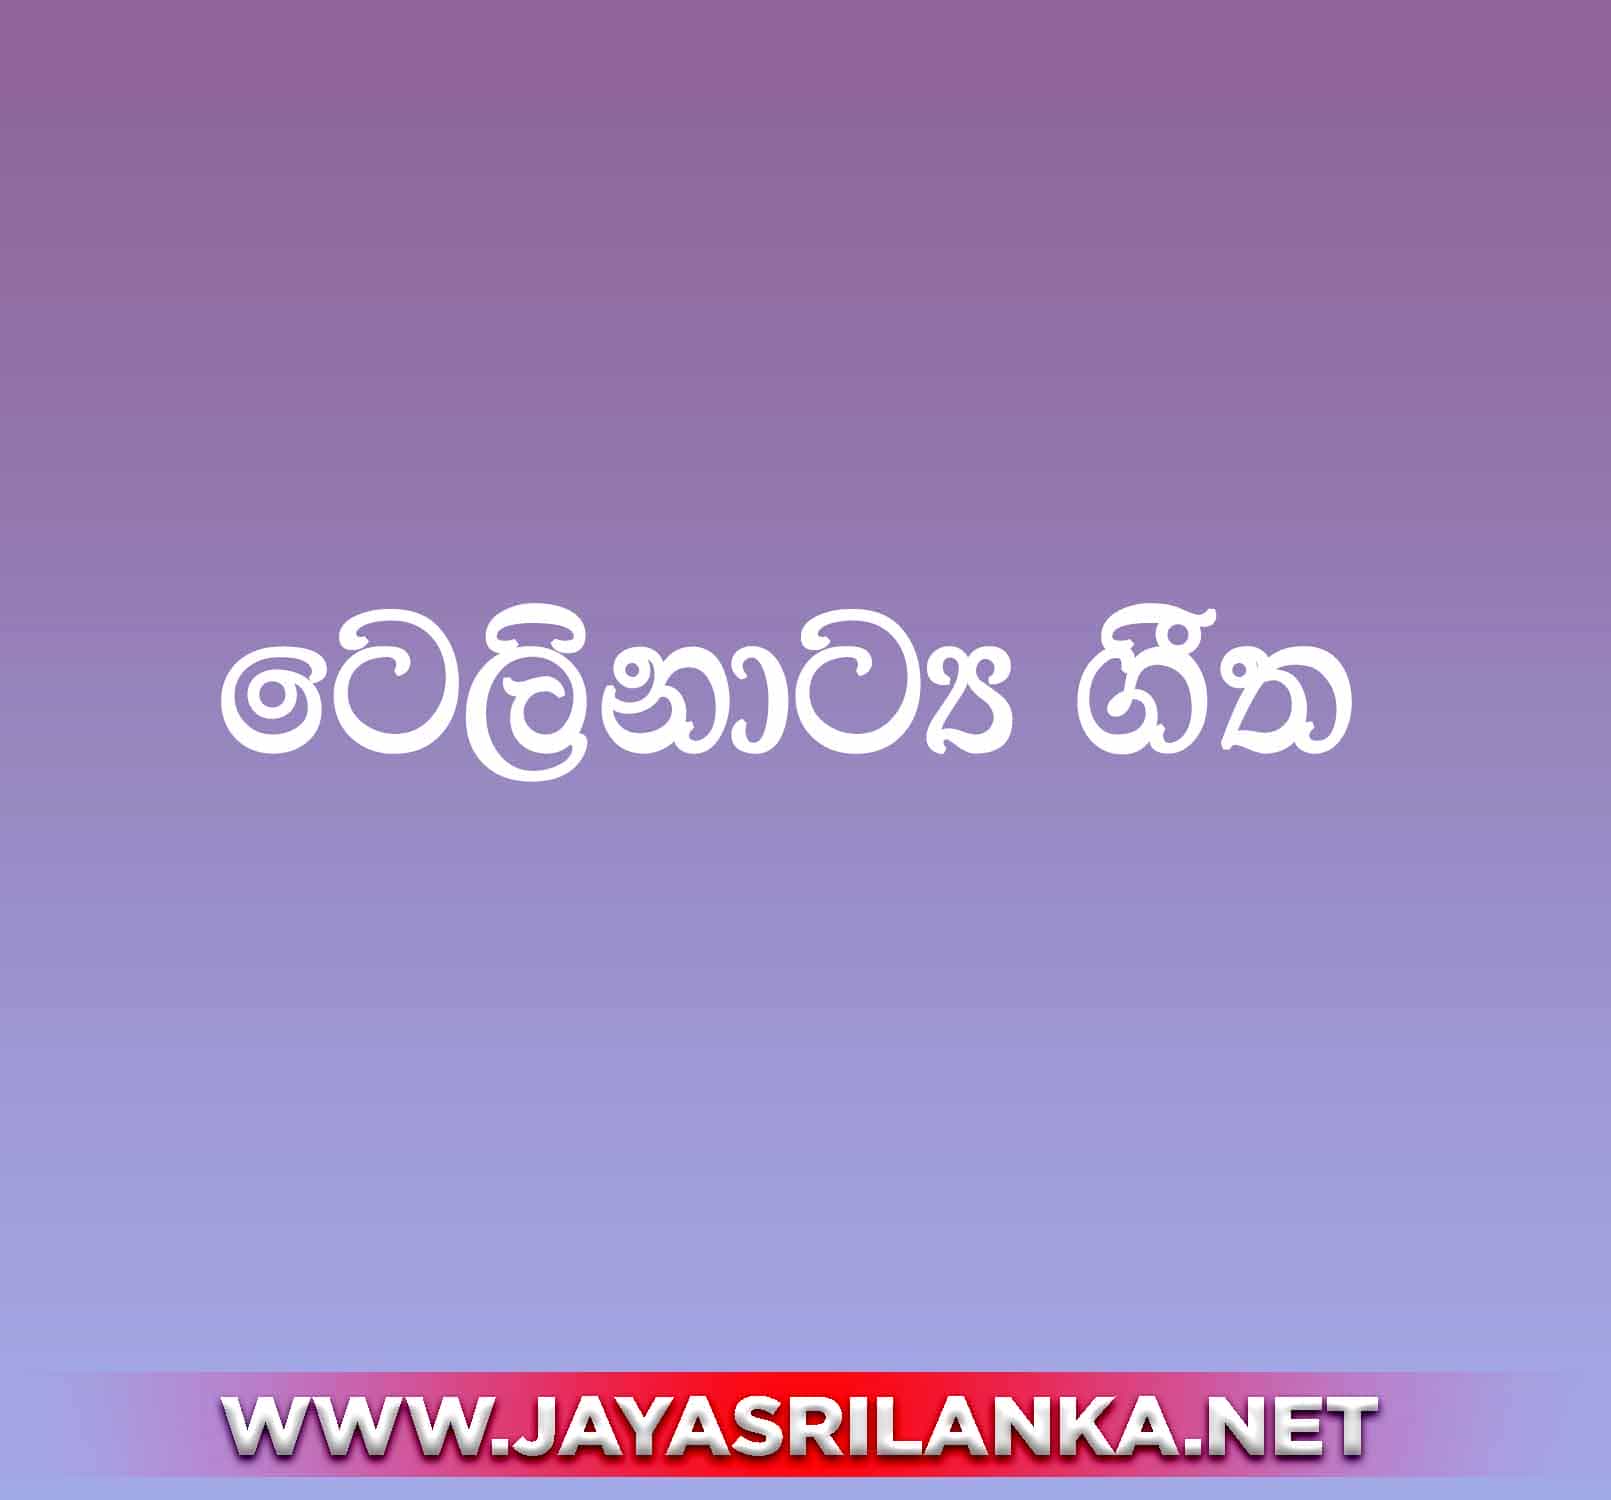 Dura Atha Atha Durin Durata - Sinhala Teledrama Songs mp3 Image